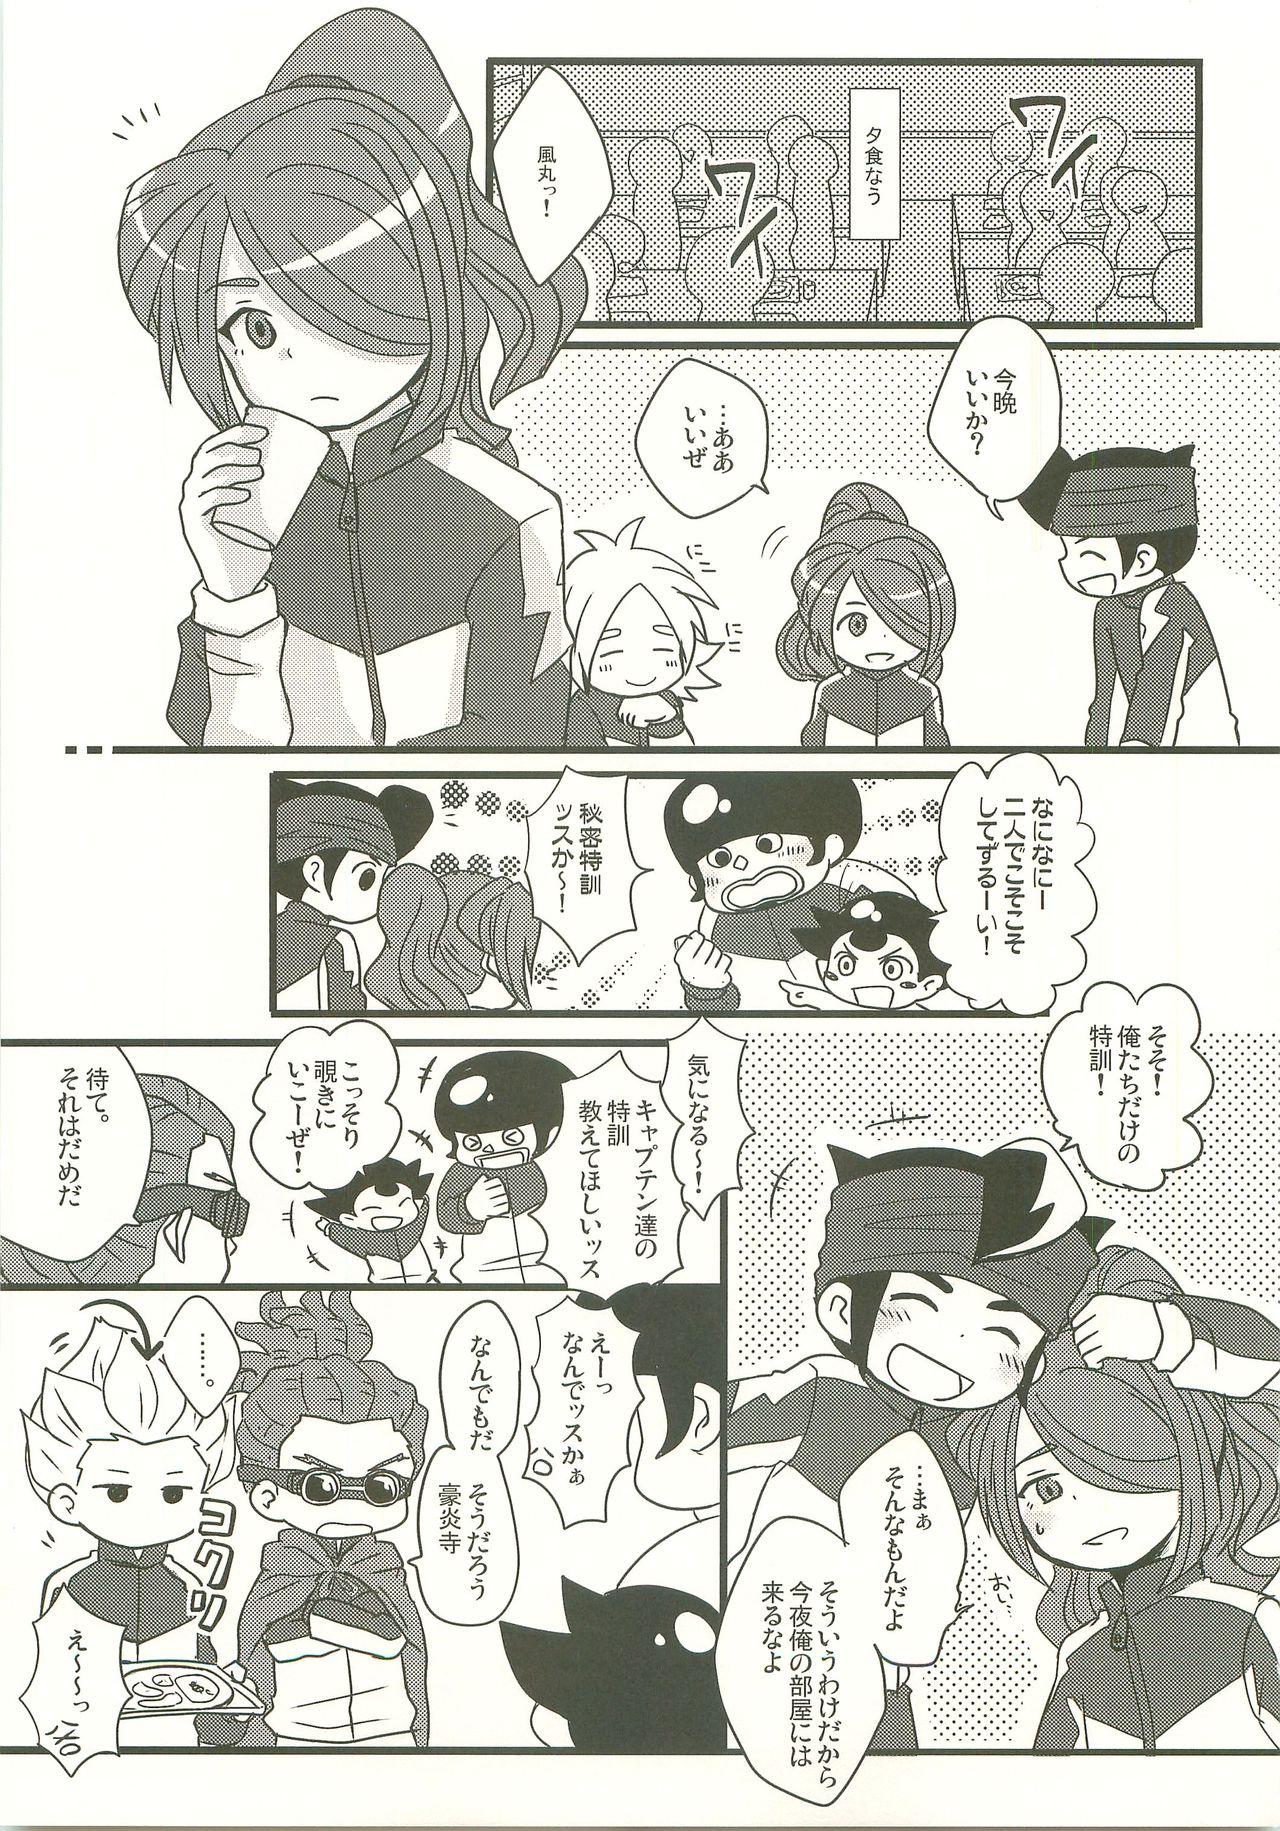 Topless Suki no Shirushi no Kiss - Inazuma eleven Dando - Page 2